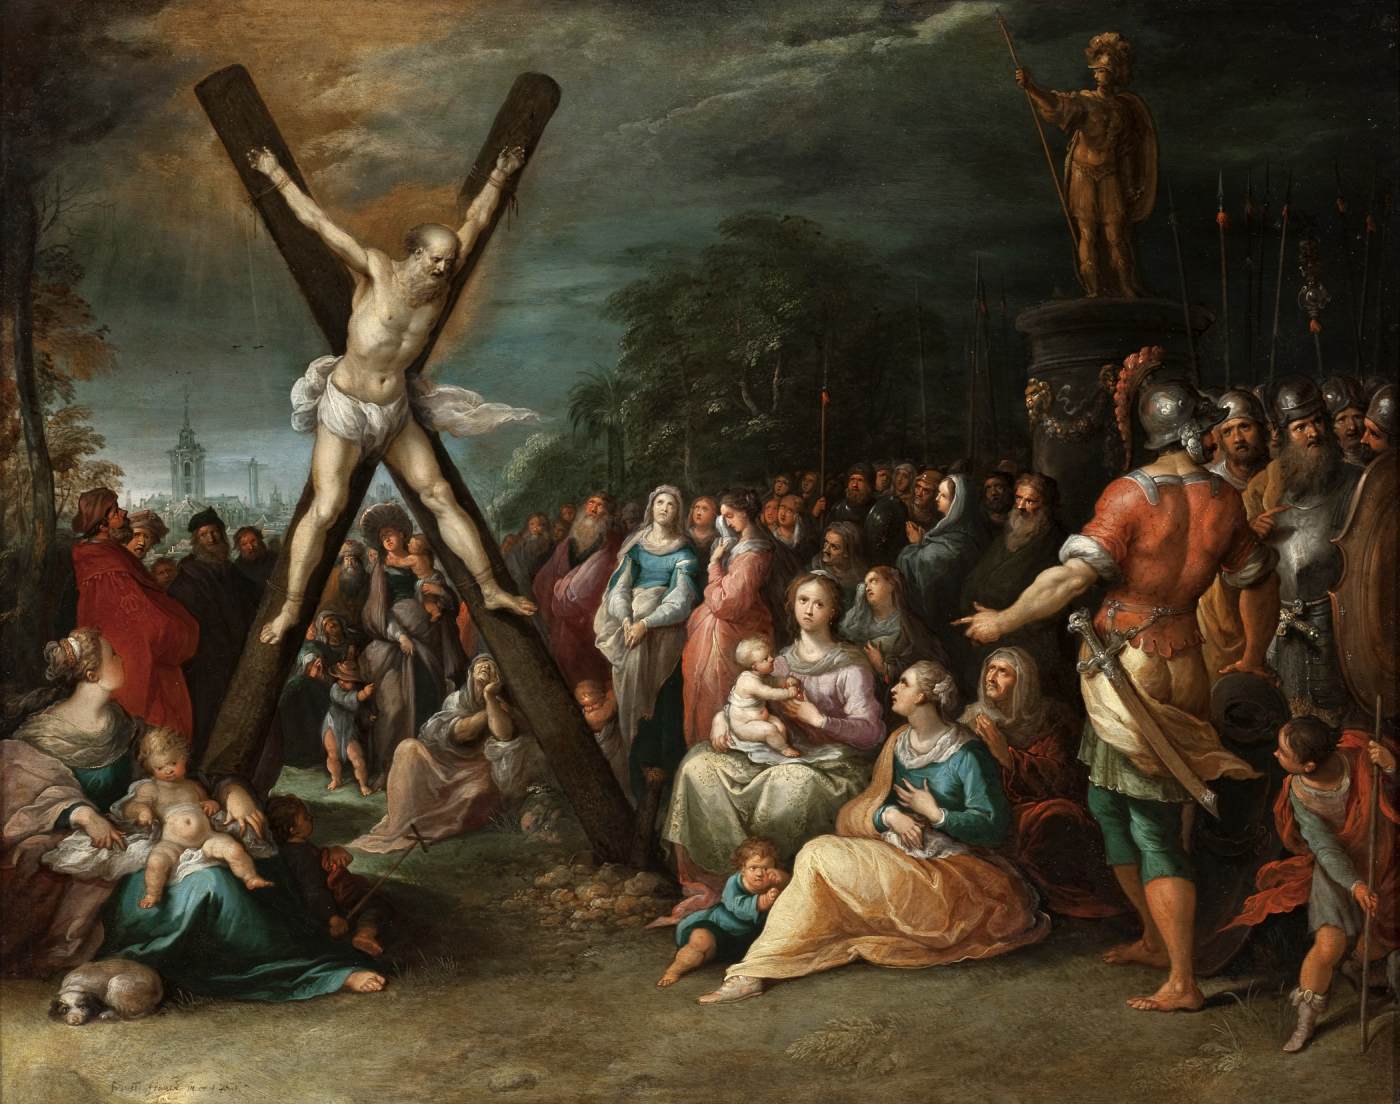 La crucifixion de San Andrés